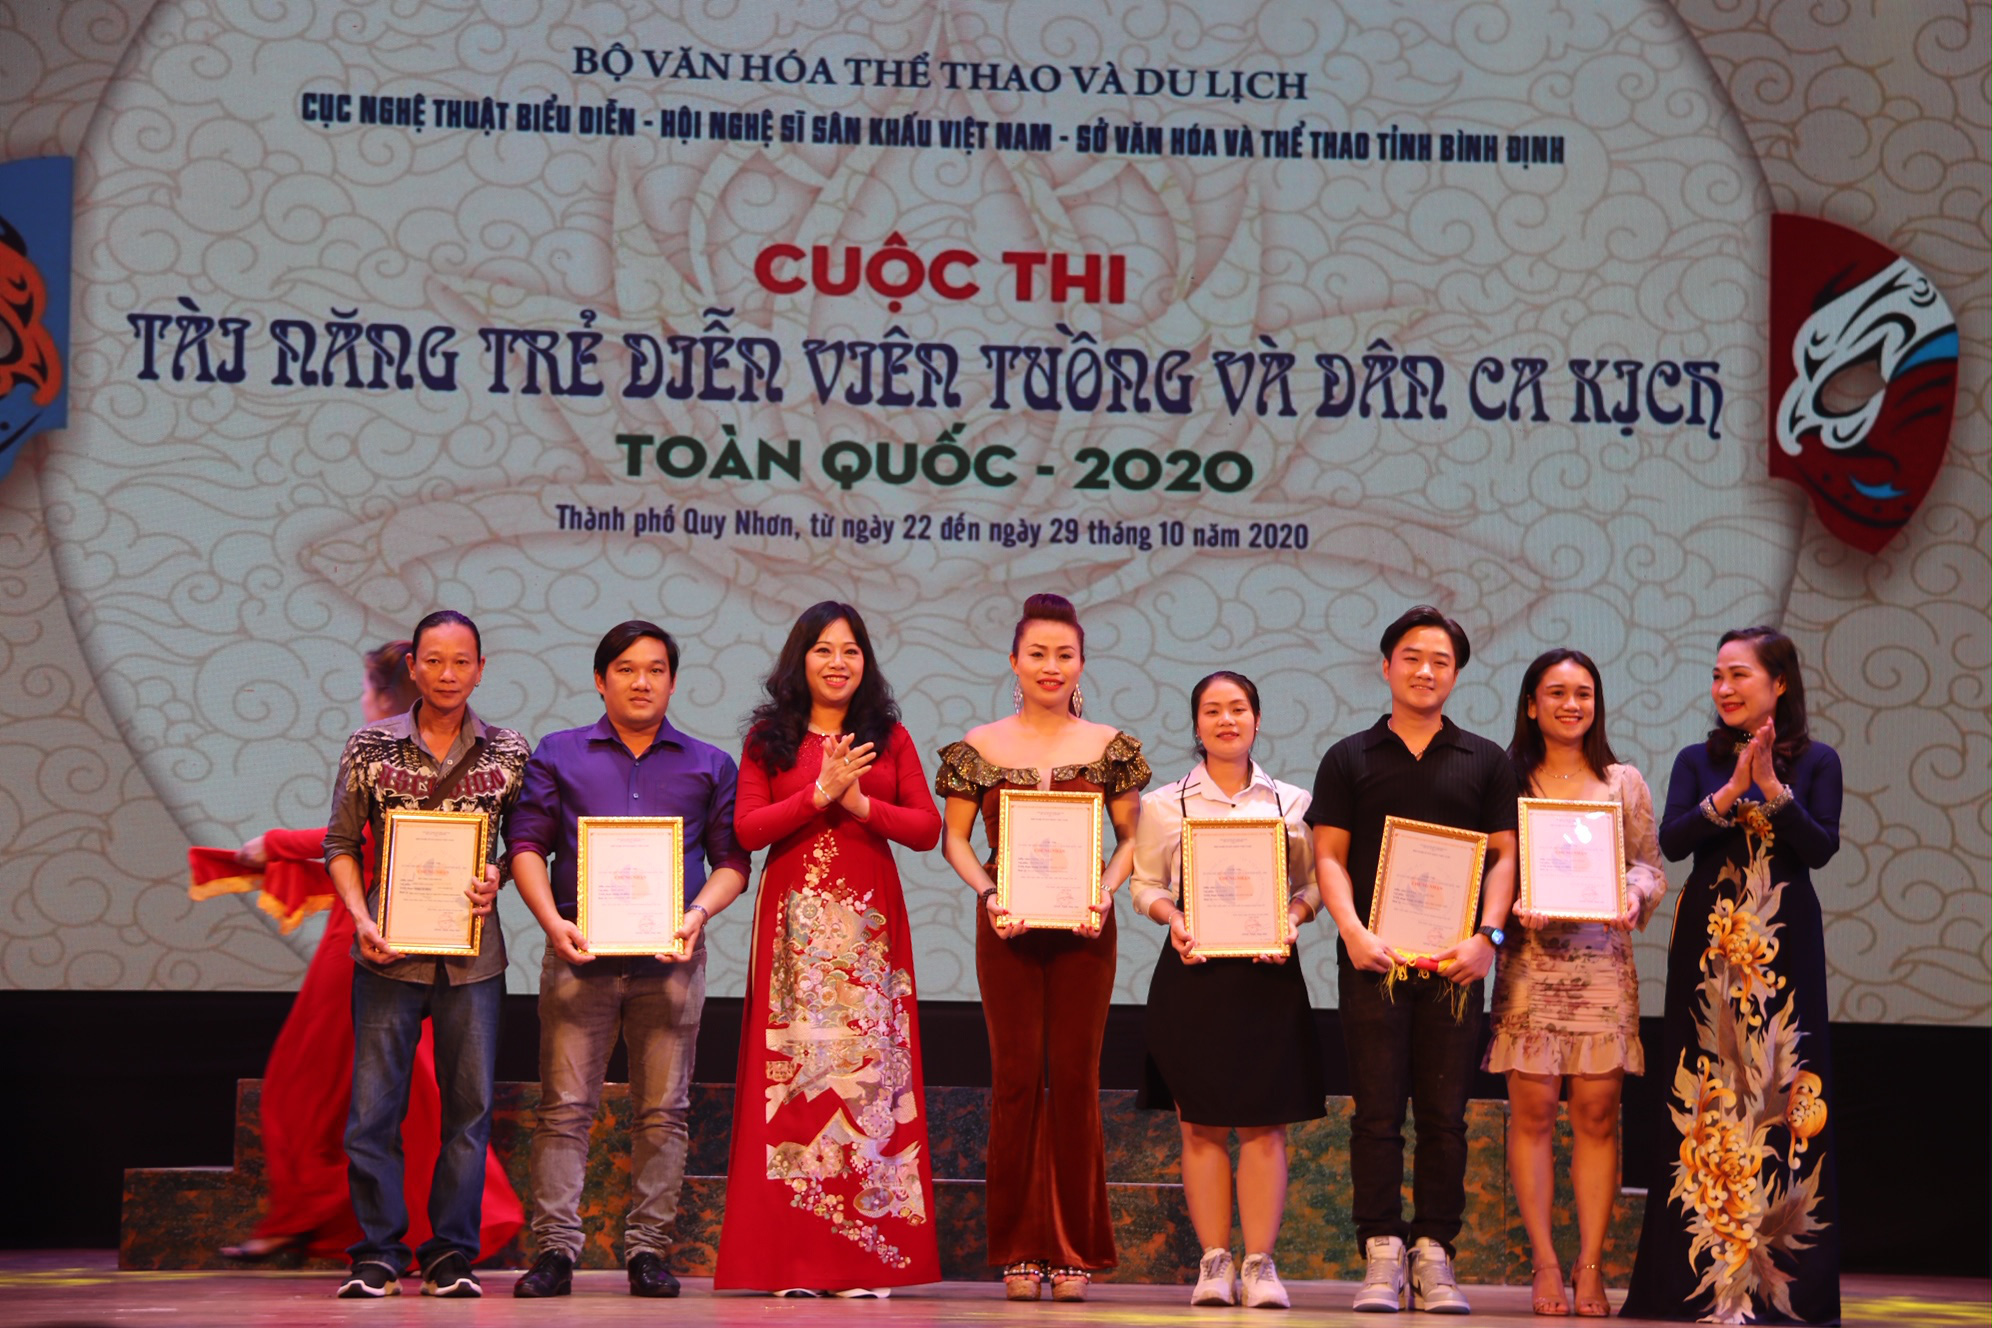 6 Huy chương Vàng được trao tại Cuộc thi Tài năng diễn viên Tuồng và Dân ca kịch toàn quốc 2020 - Ảnh 2.